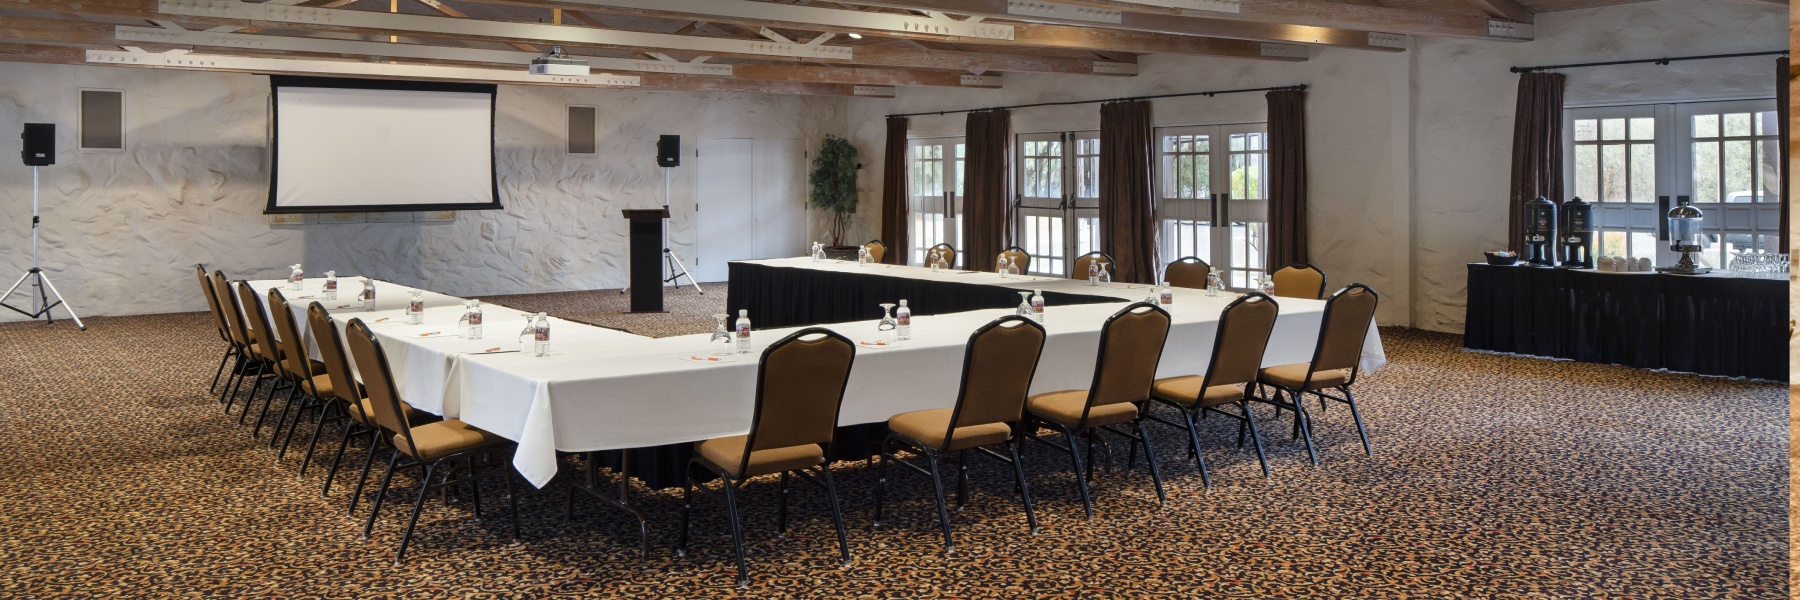 Meetings at La Casa Del Zorro Resort & Spa, Borrego Springs California